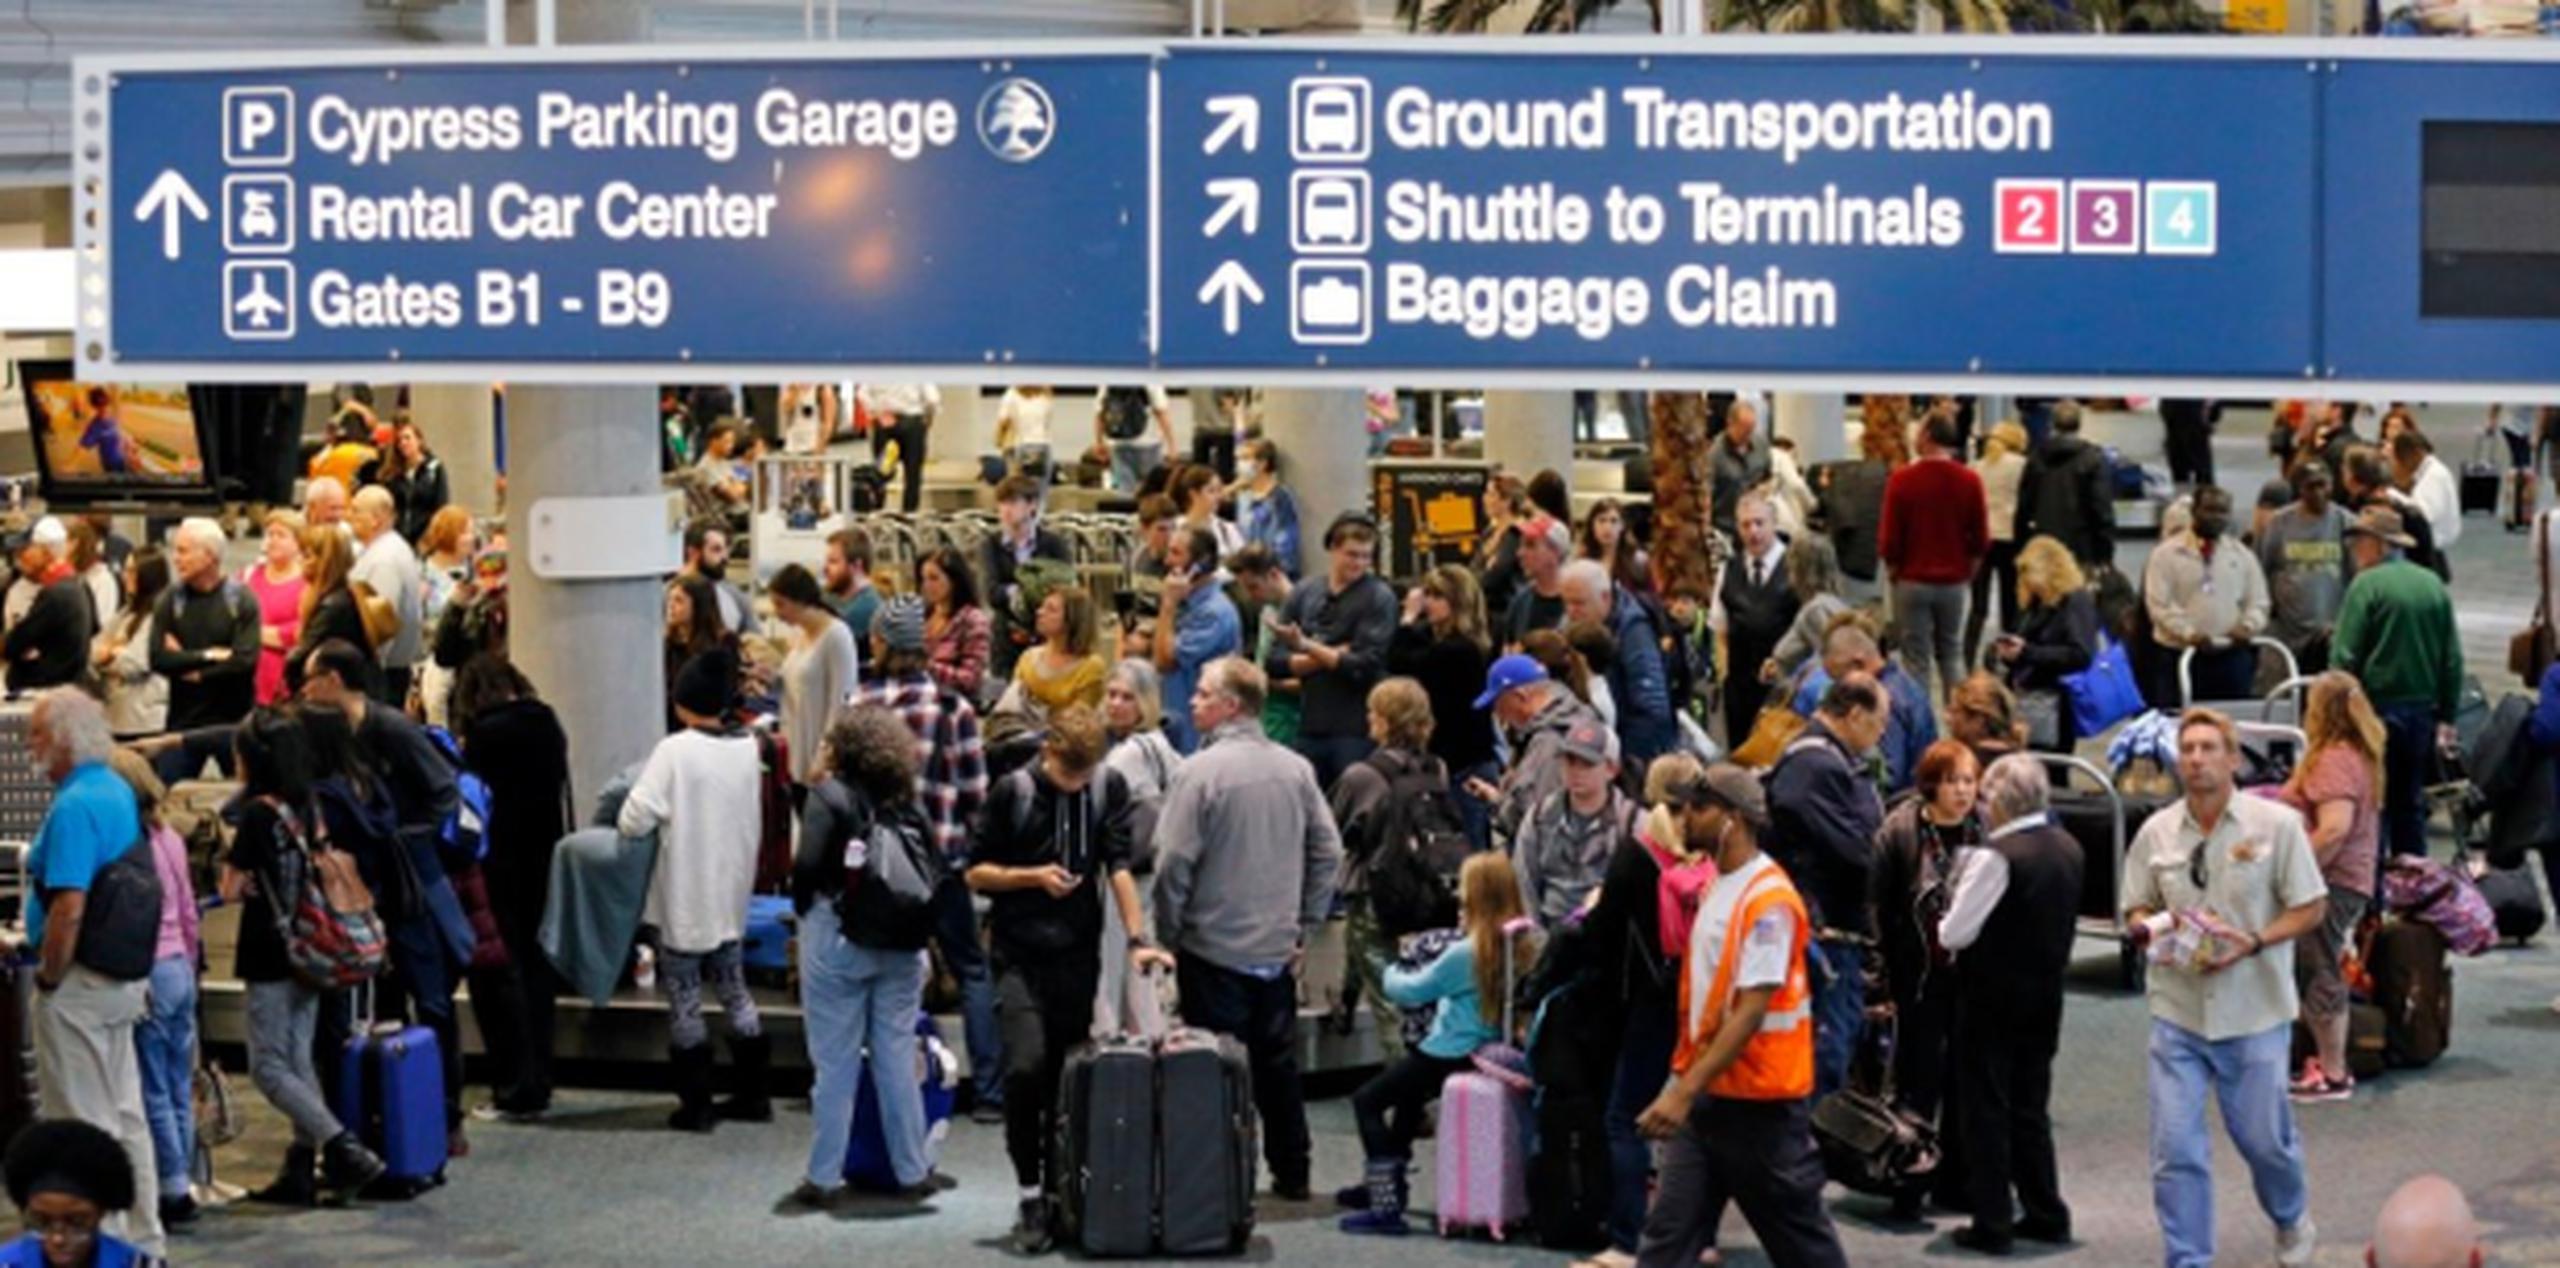 Expertos en seguridad sostienen que la zona de reclamo de maletas sigue siendo una de las más vulnerables en un aeropuerto. La seguridad es menor y una gran cantidad de gente entra y sale de ellas rápidamente. (AP)